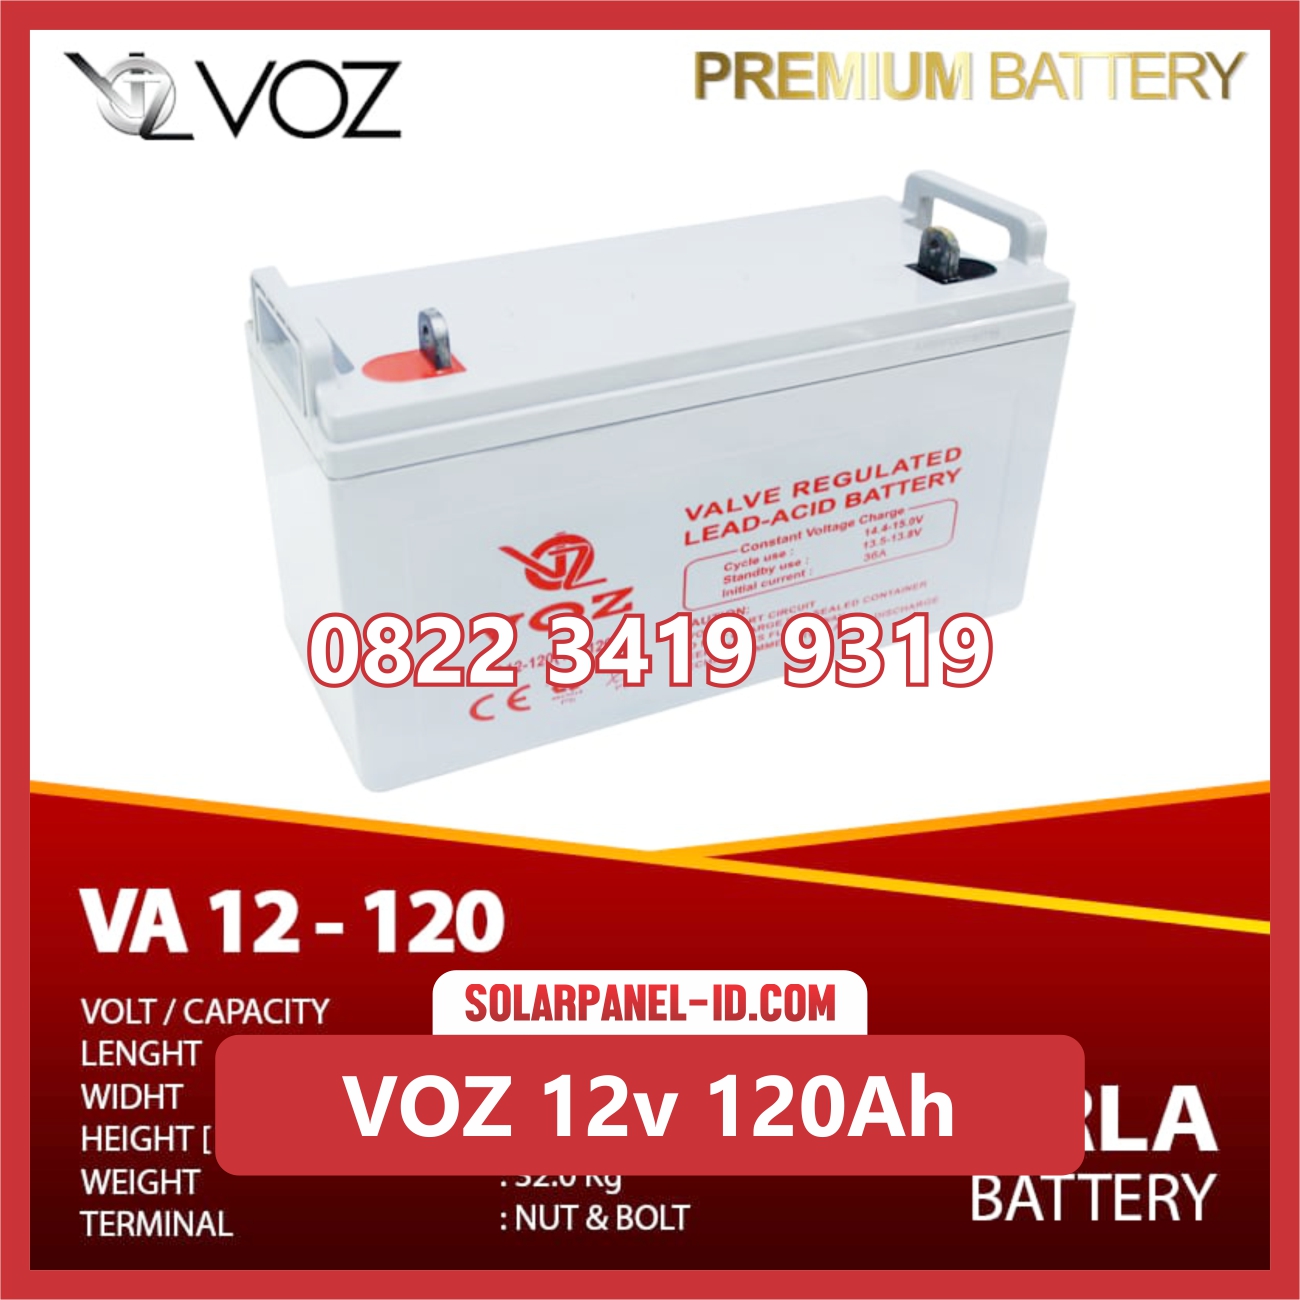 VOZ baterai kering 12v 120ah baterai pju tenaga surya